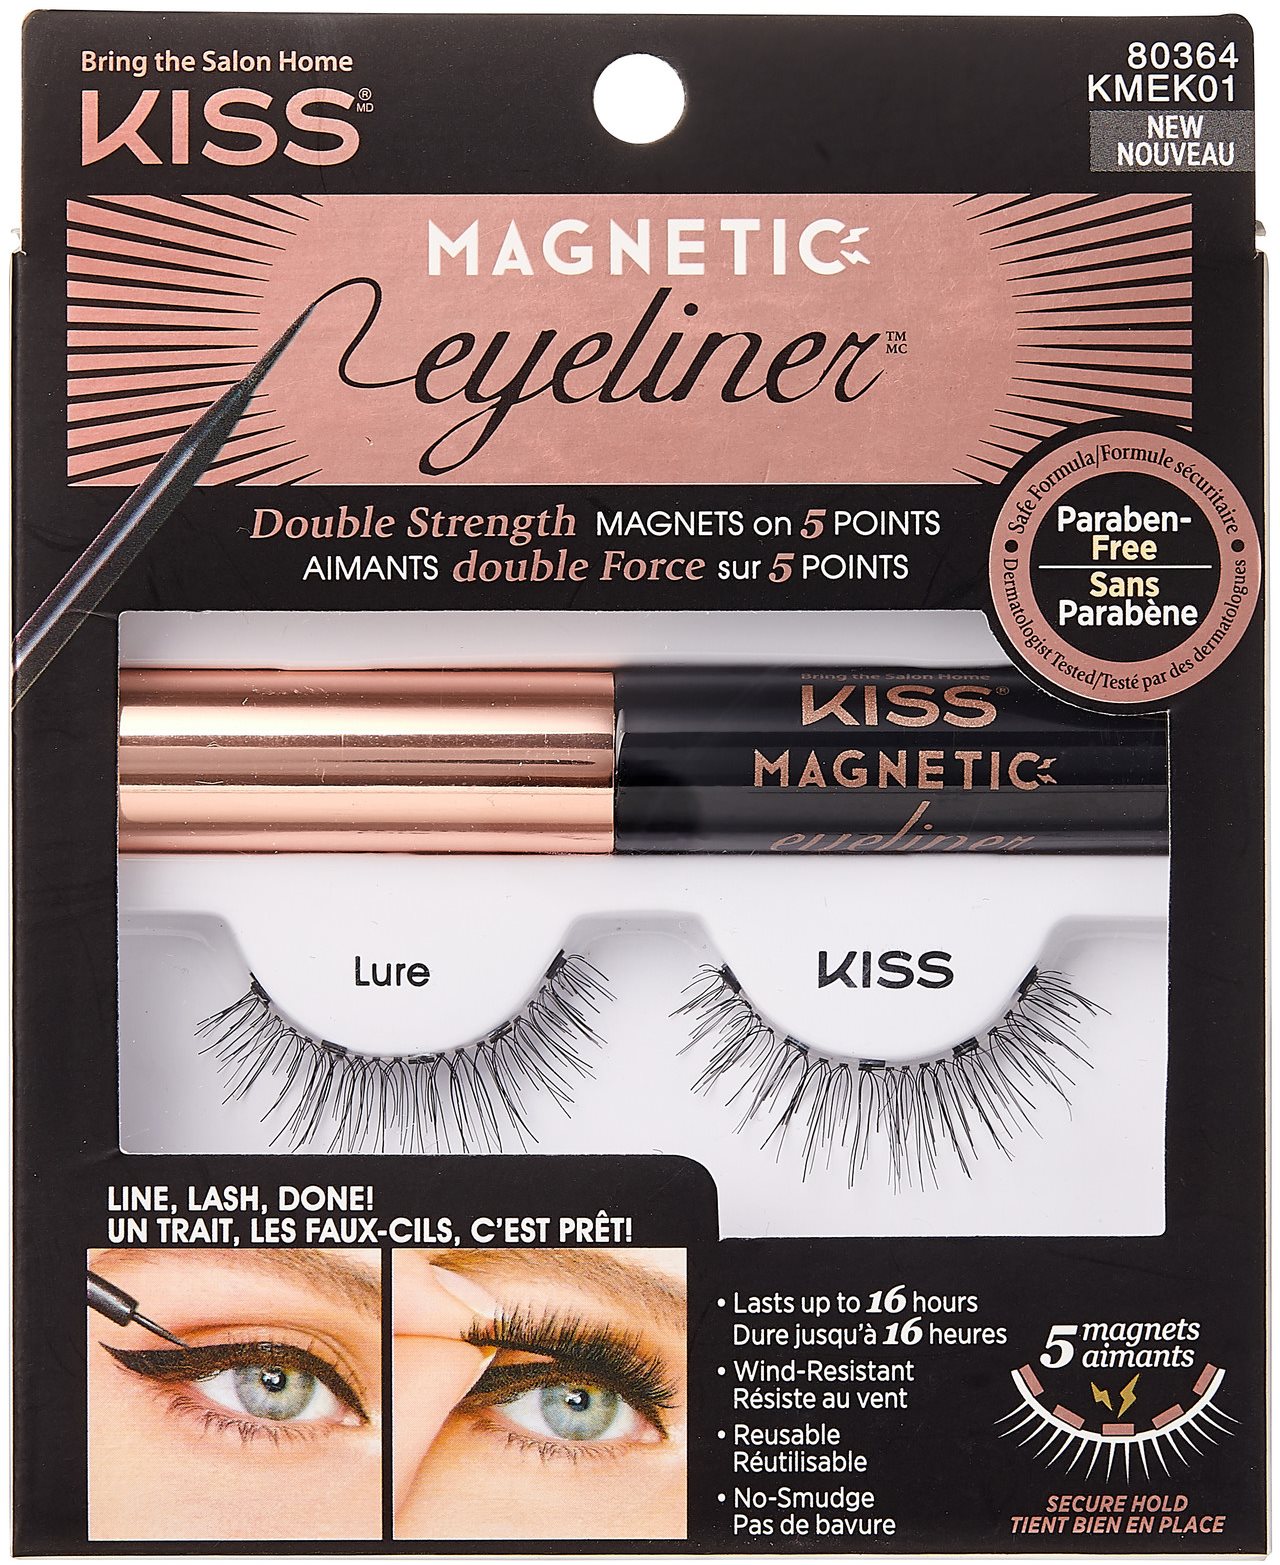 KISS Magnetic Eyeliner Kit - 01